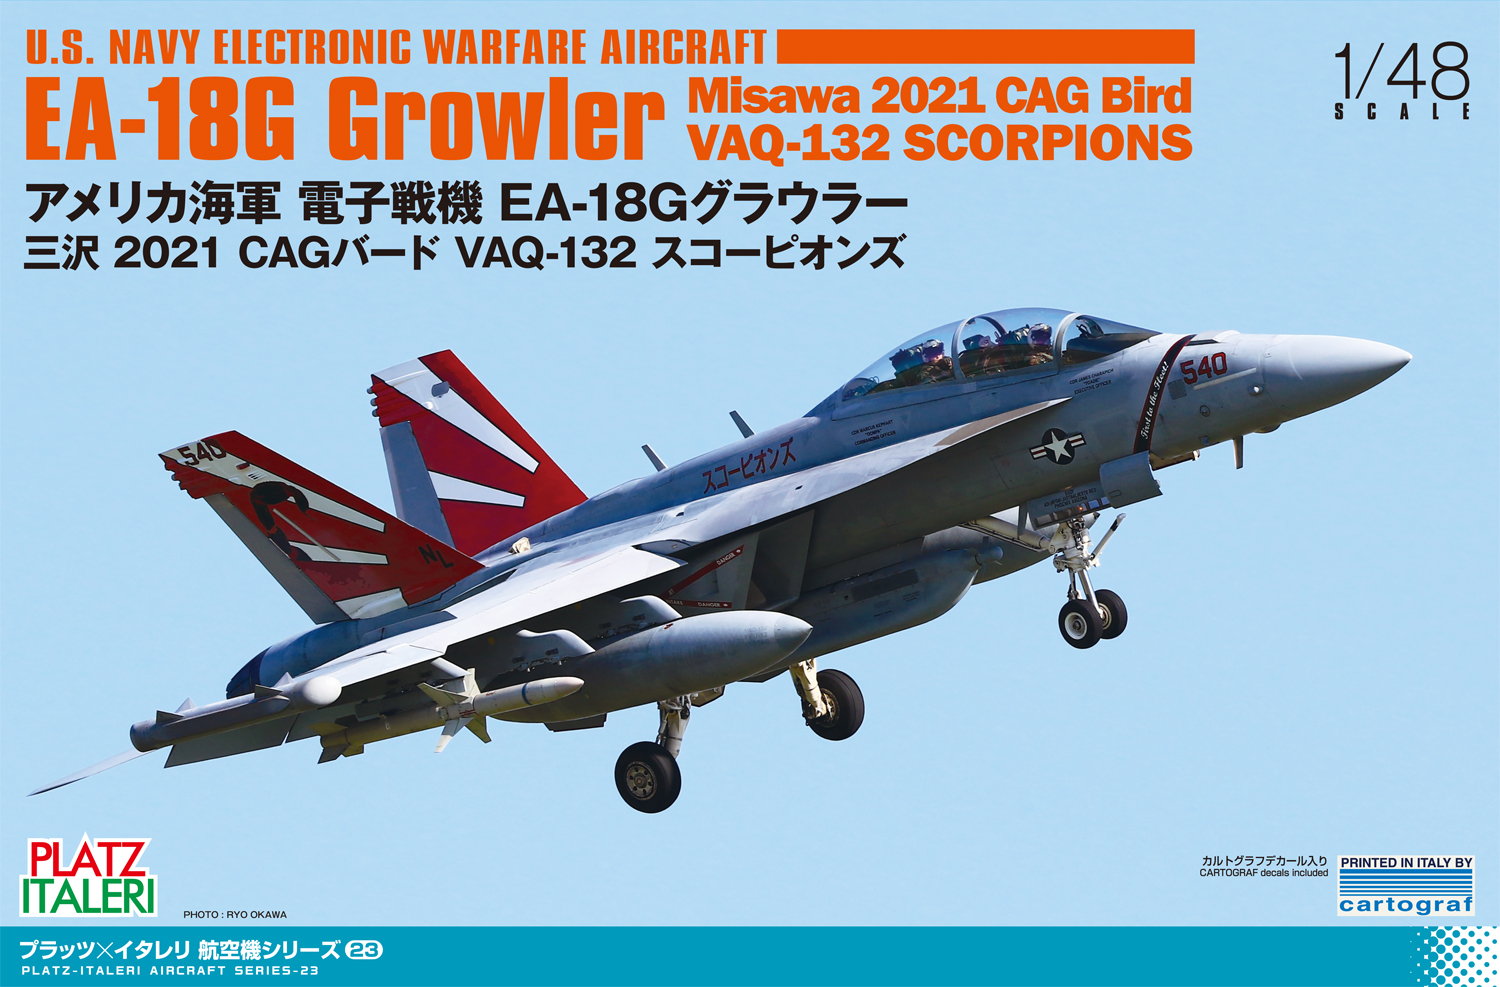 1/48 アメリカ海軍 電子戦機 EA-18G グラウラー 三沢 2021 CAGバード VAQ-132 スコーピオンズ